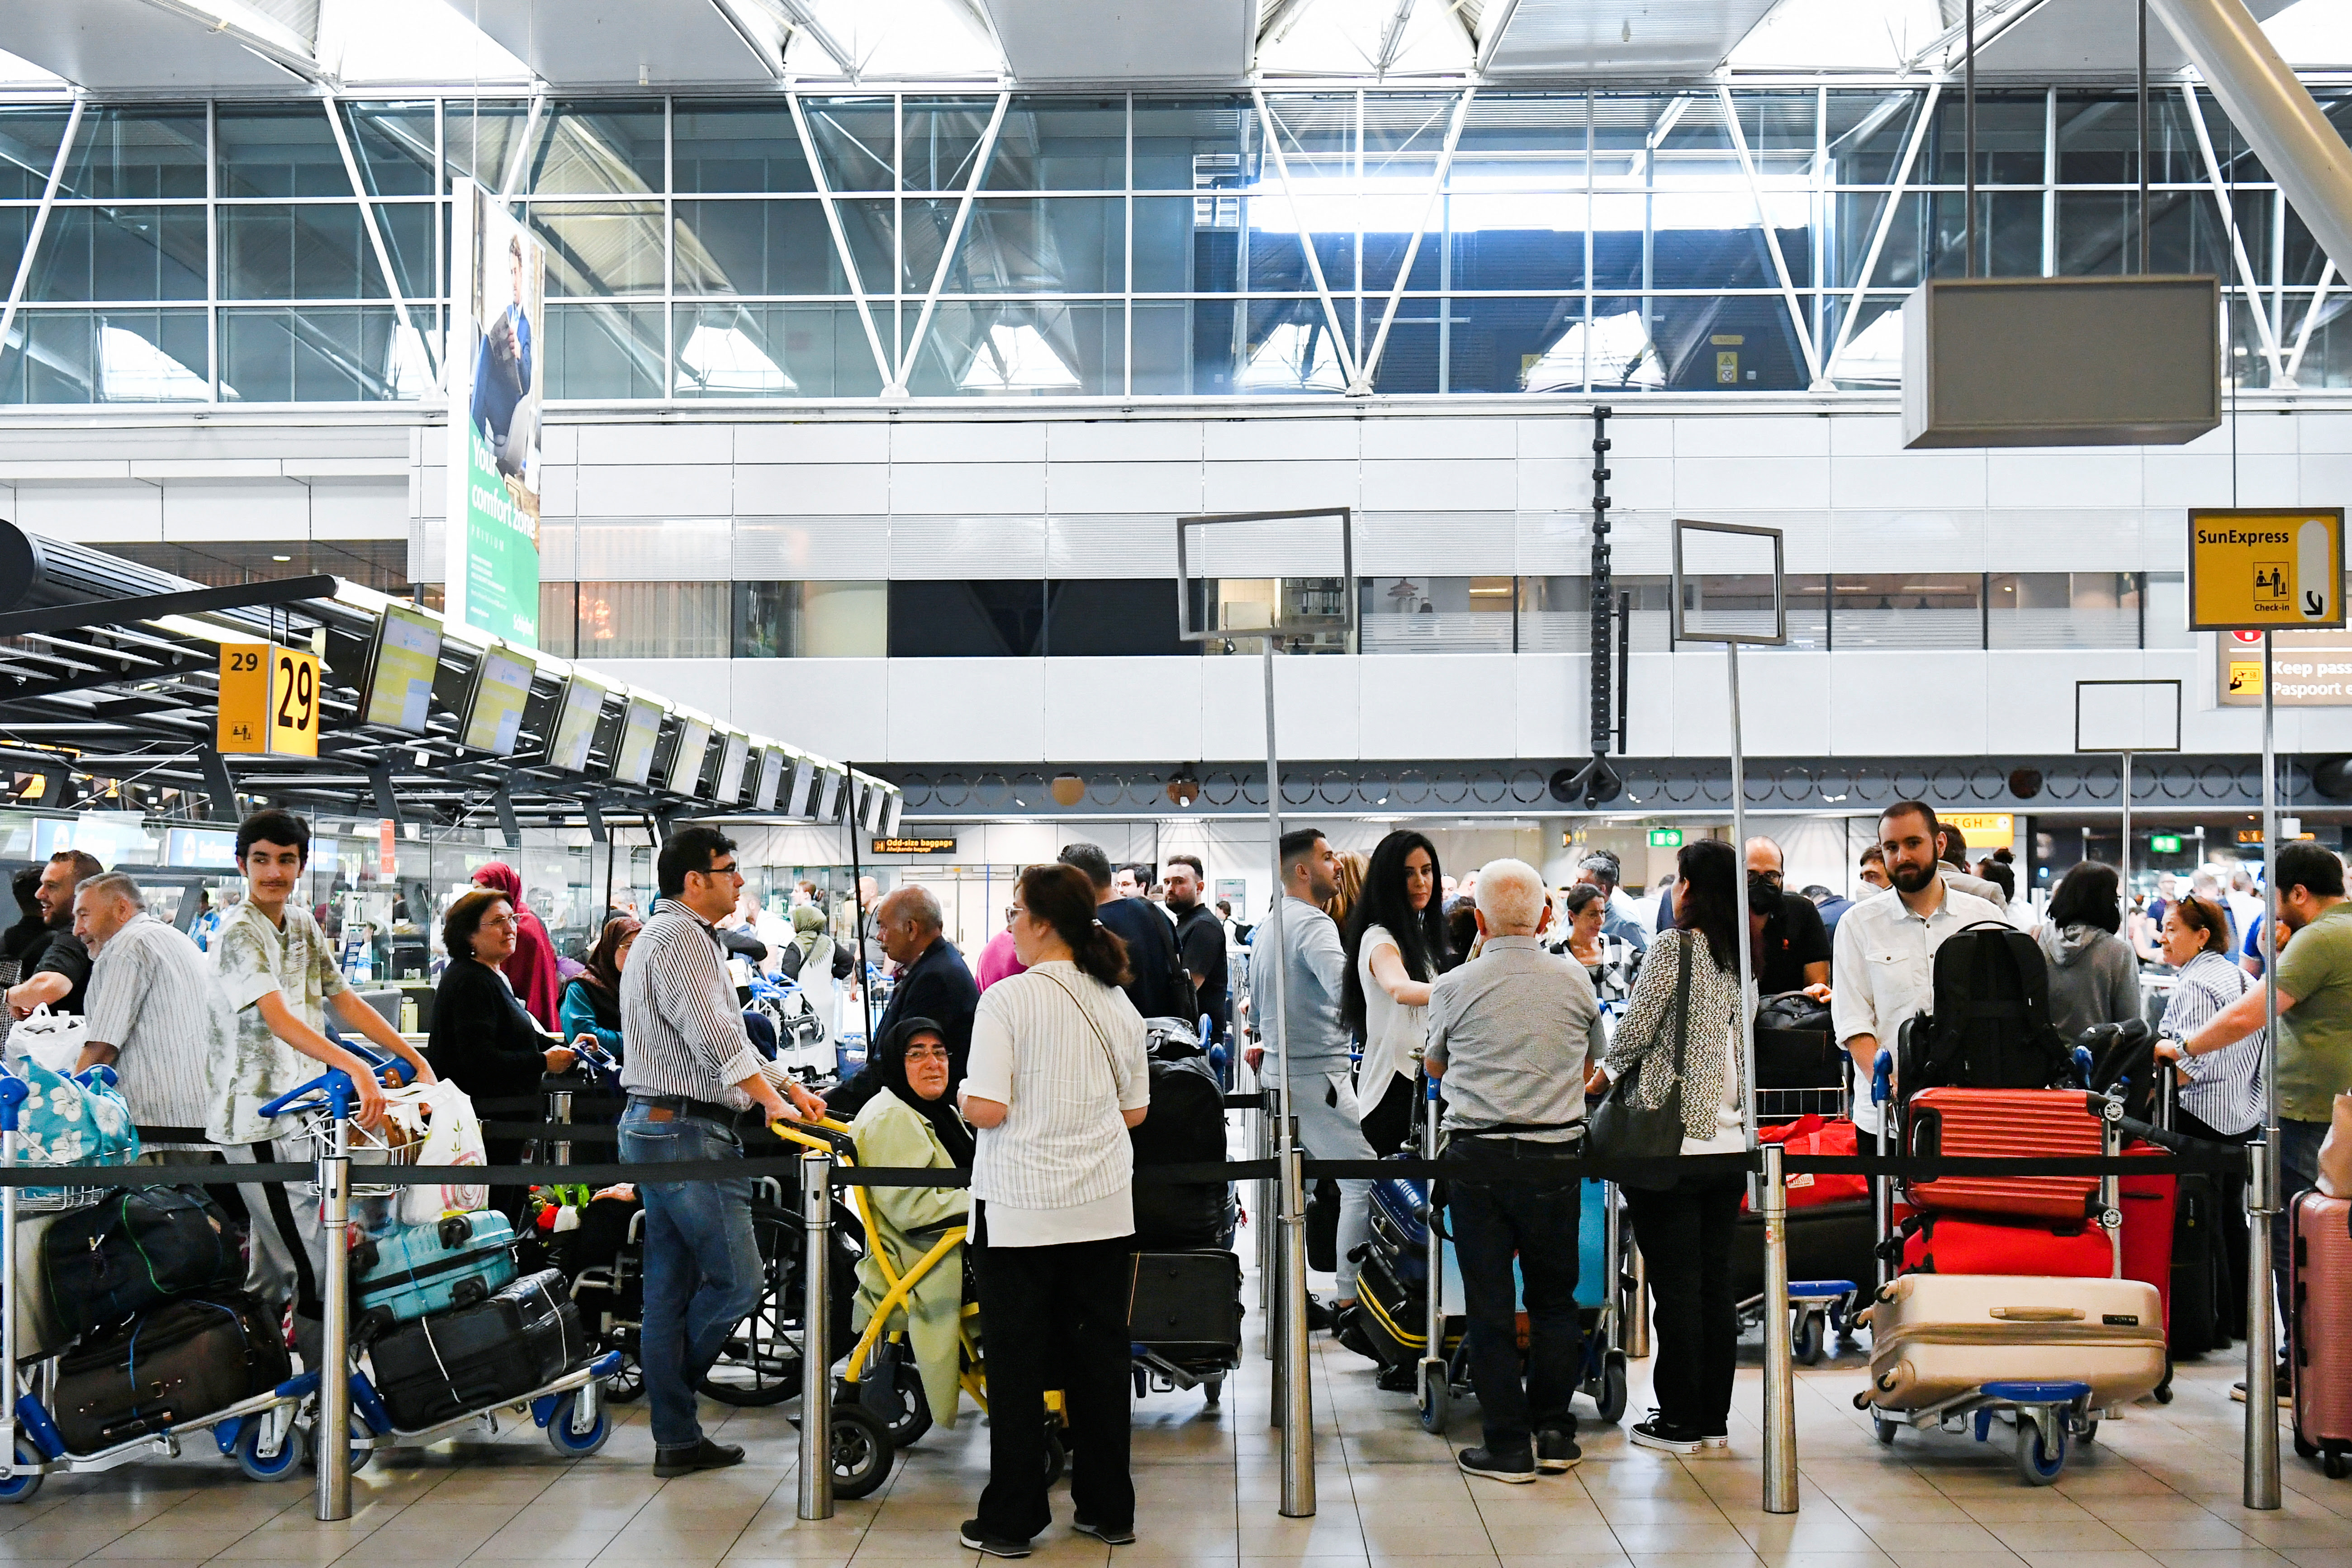 Largas filas en el aeropuerto de Shipol, uno de los más transitados de Europa (REUTERS/Piroschka van de Wouw)